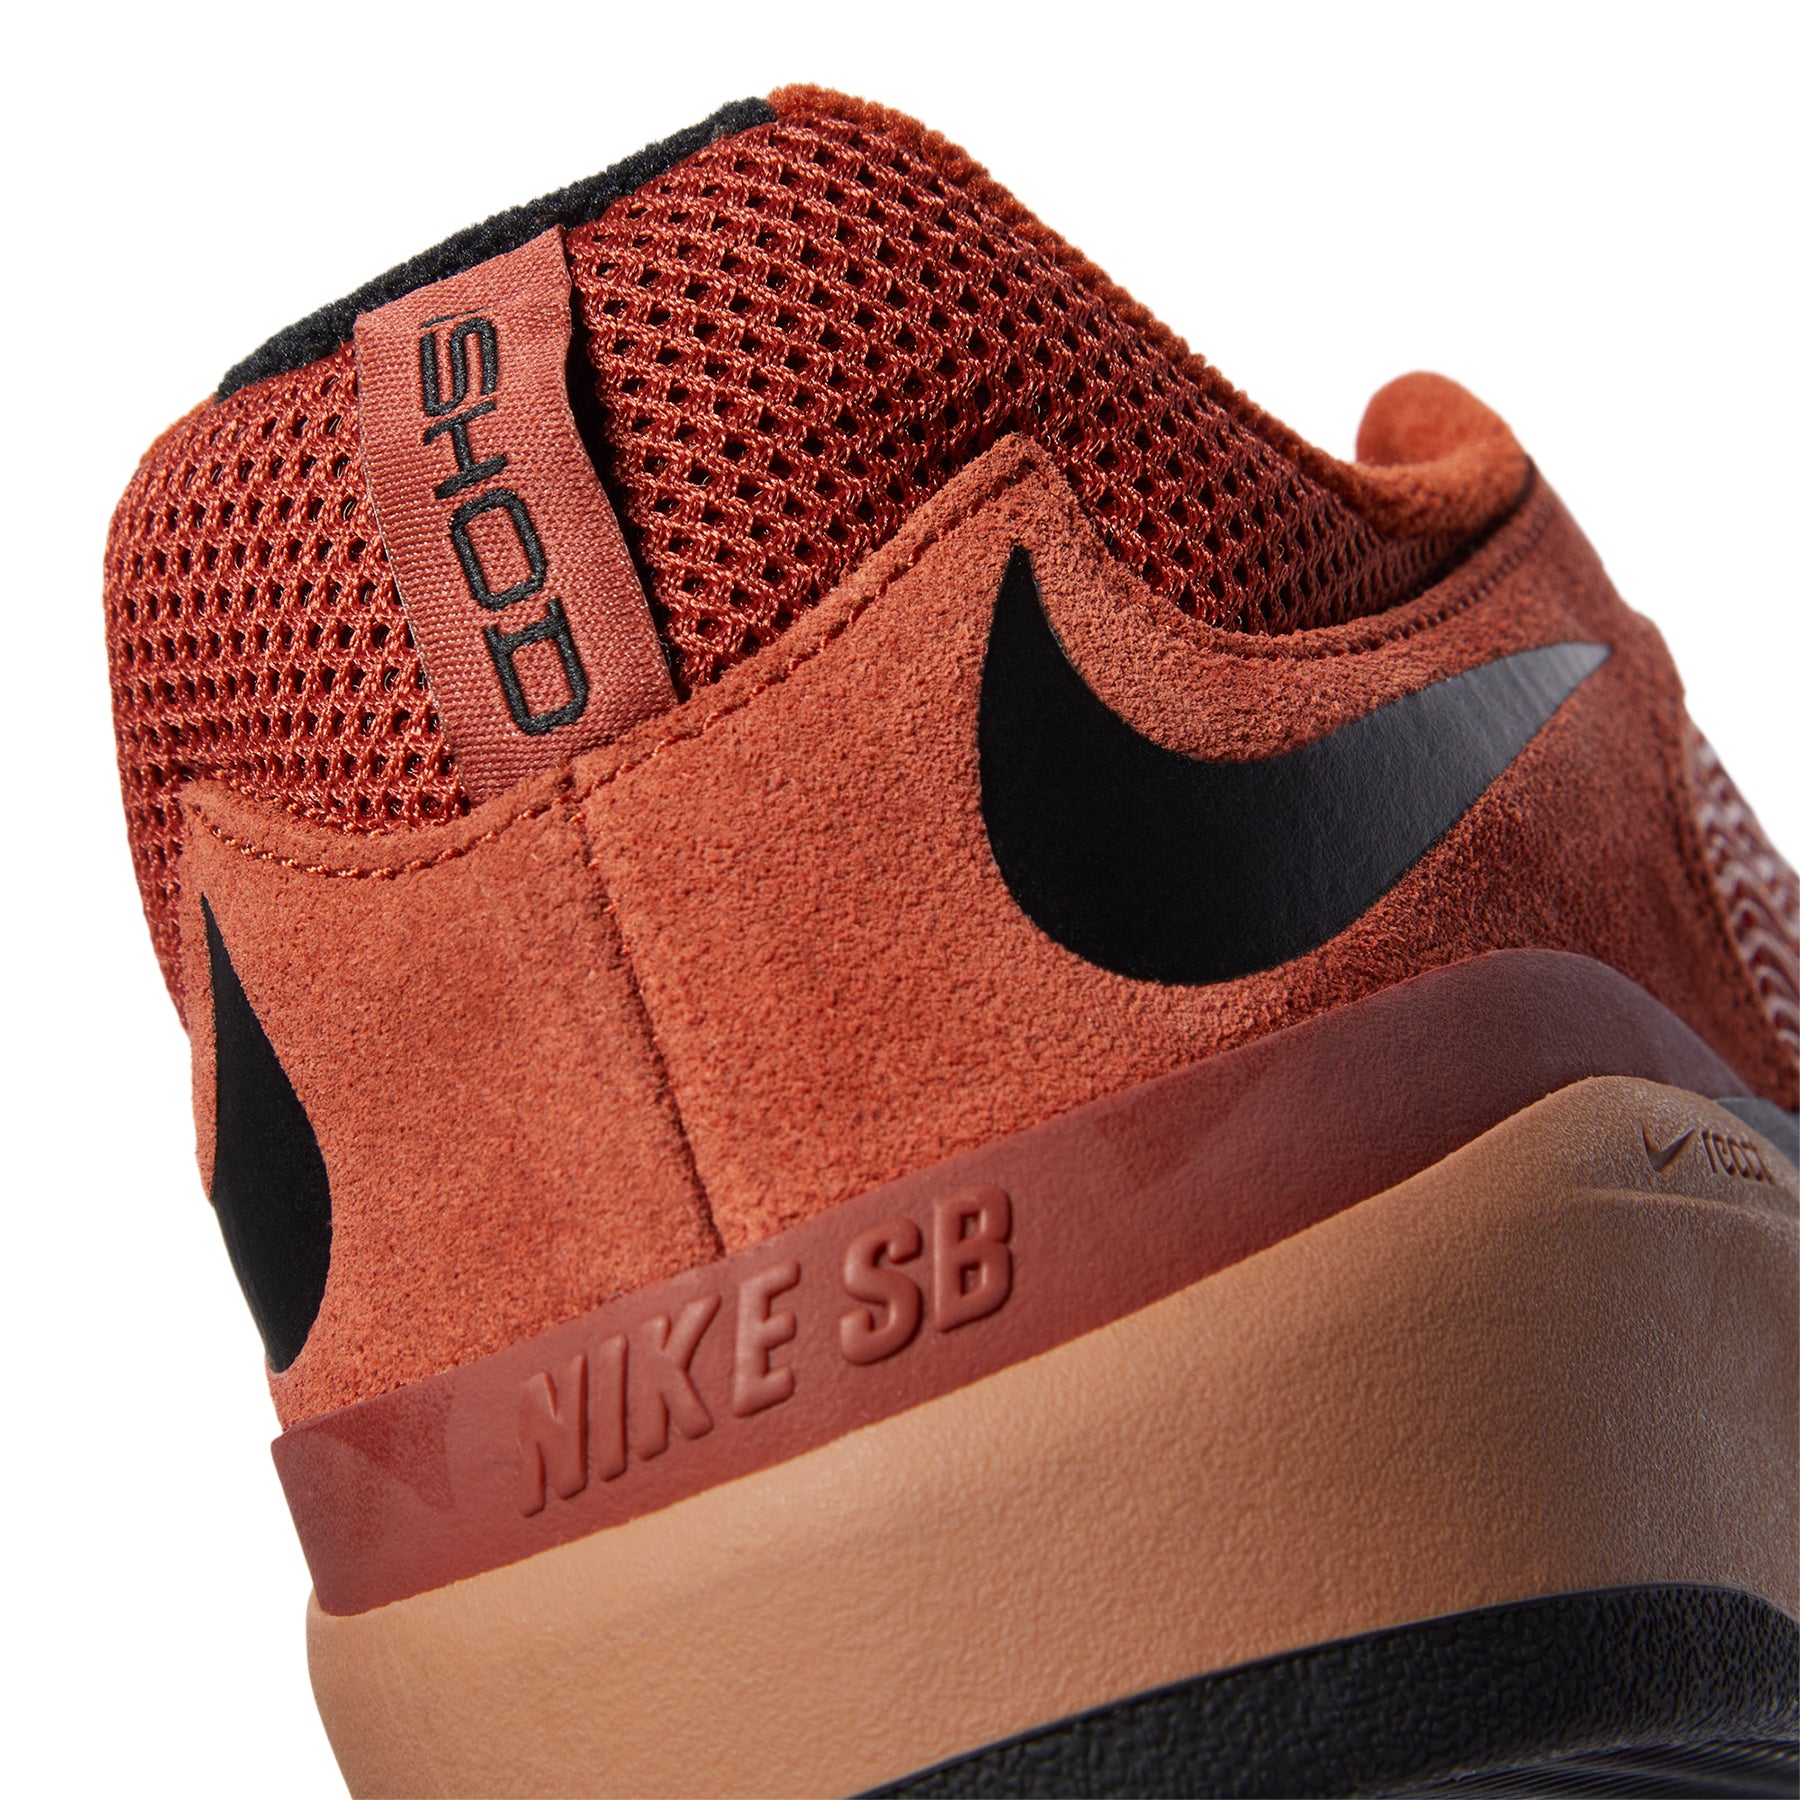 Nike SB Ishod Wair Shoes (rugged orange/black mineral clay black)